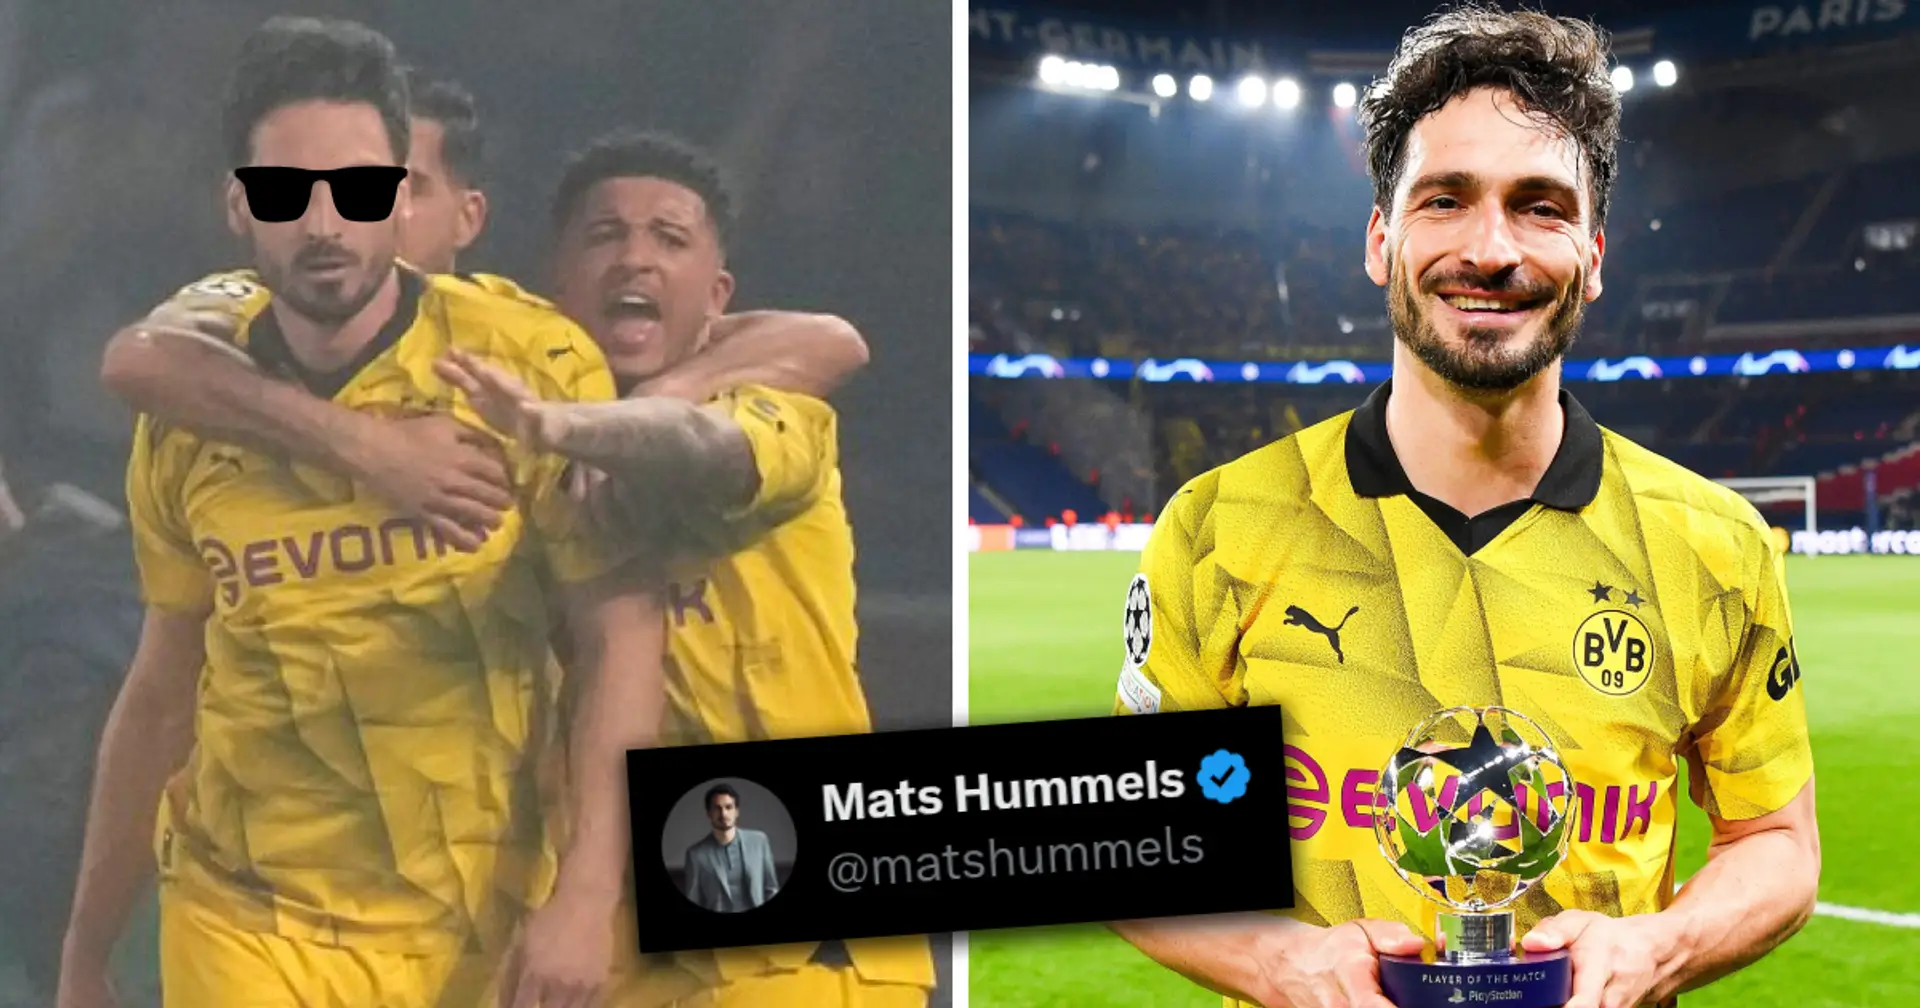 "Mi sono svegliato e ho scelto la violenza": i tifosi di calcio non ne hanno mai abbastanza del tweet di Mats Hummels